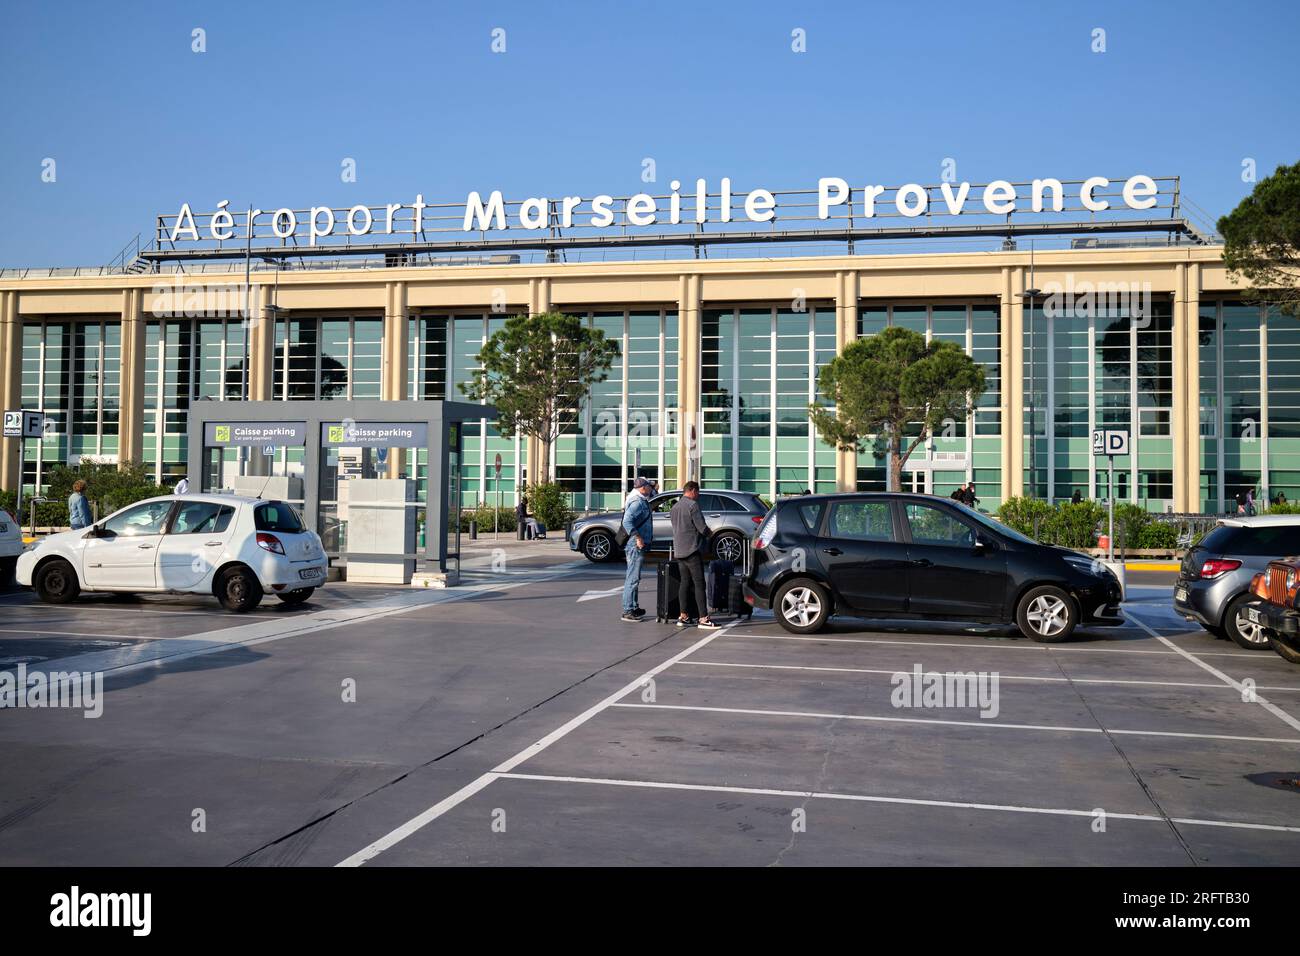 Terminalgebäude am Flughafen Marseille Marseille Frankreich Stockfoto